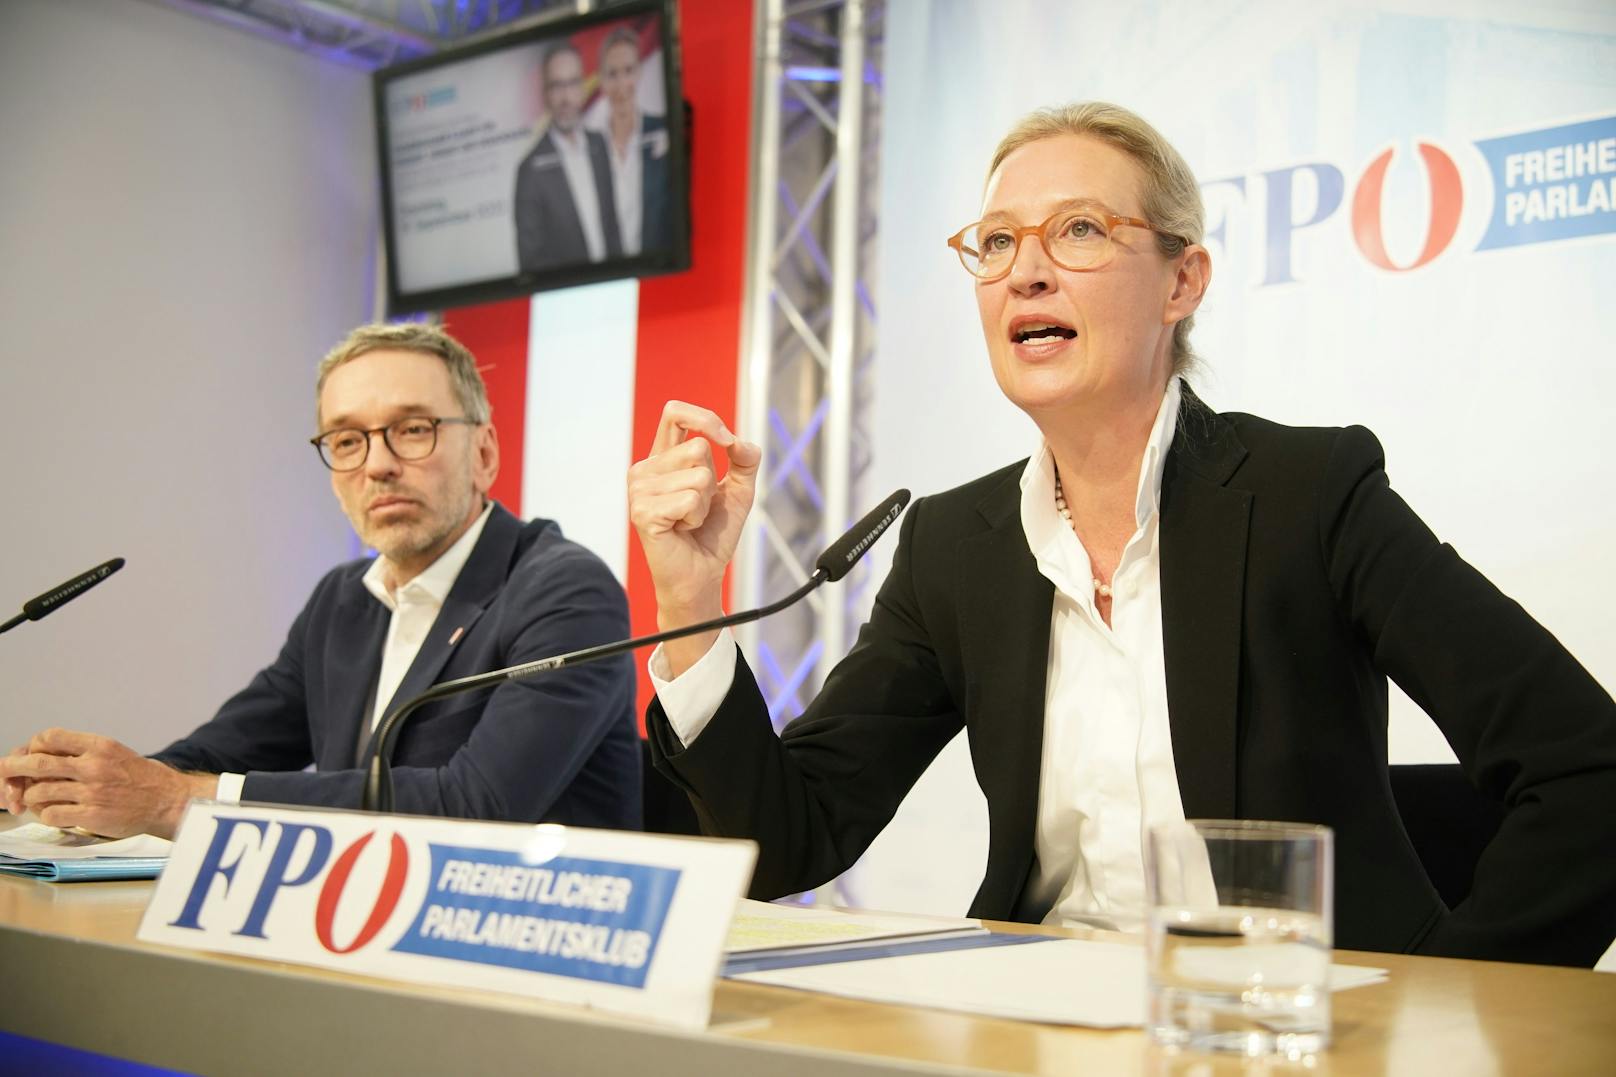 Doppelt rechts: Alice Weidel (AfD) zu Gast in Wien für eine gemeinsame Pressekonferenz mit Herbert Kickl (FPÖ) am 19. September 2023.